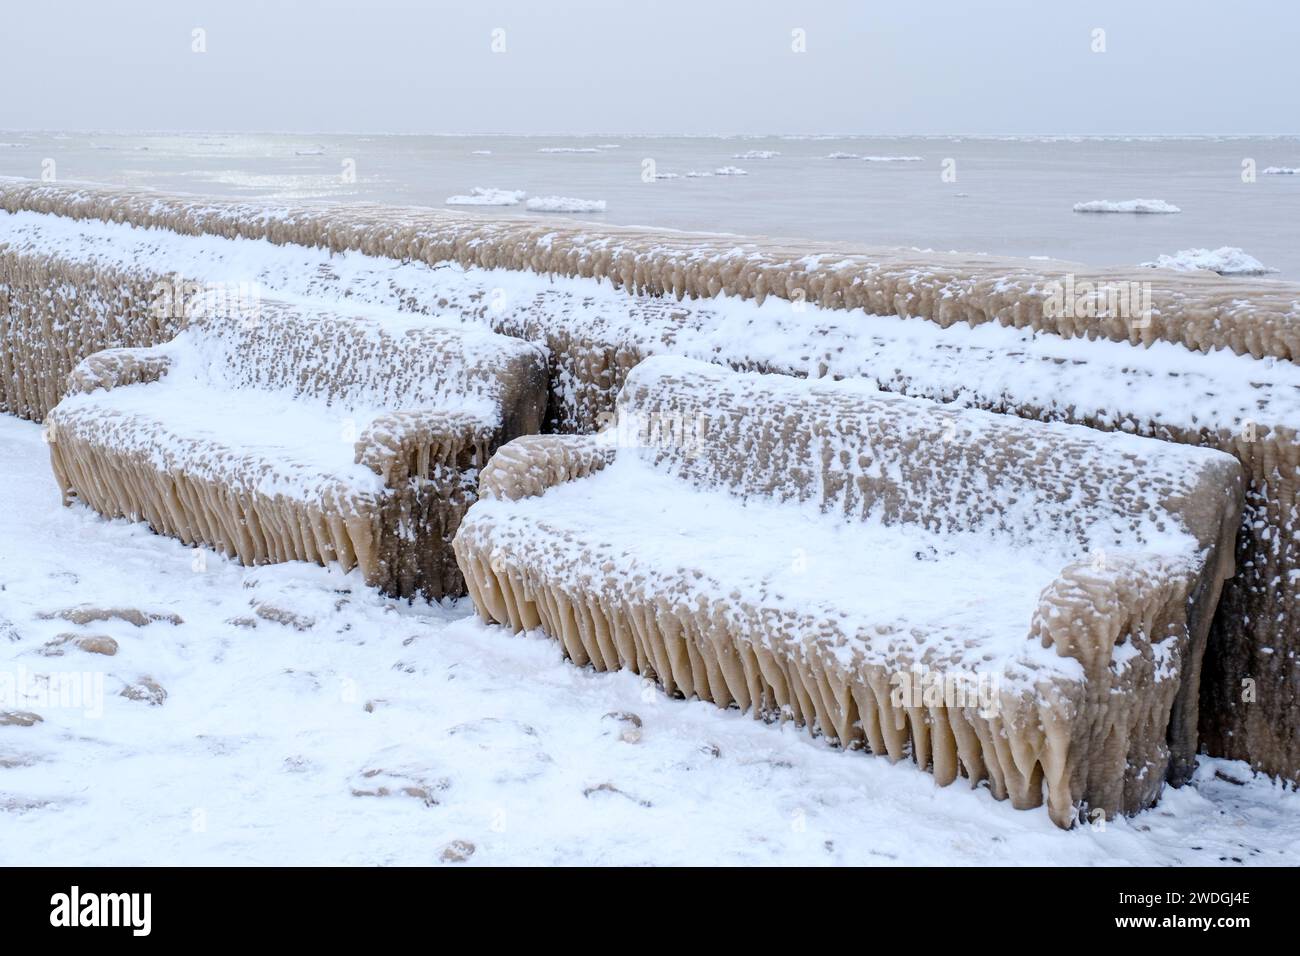 Il paese delle meraviglie invernali, i ghiaccioli dell'acqua ghiacciata dalle onde del lago Erie che coprono le banchine, scena sulla riva dopo un evento meteorologico invernale estremo, Ontario Foto Stock